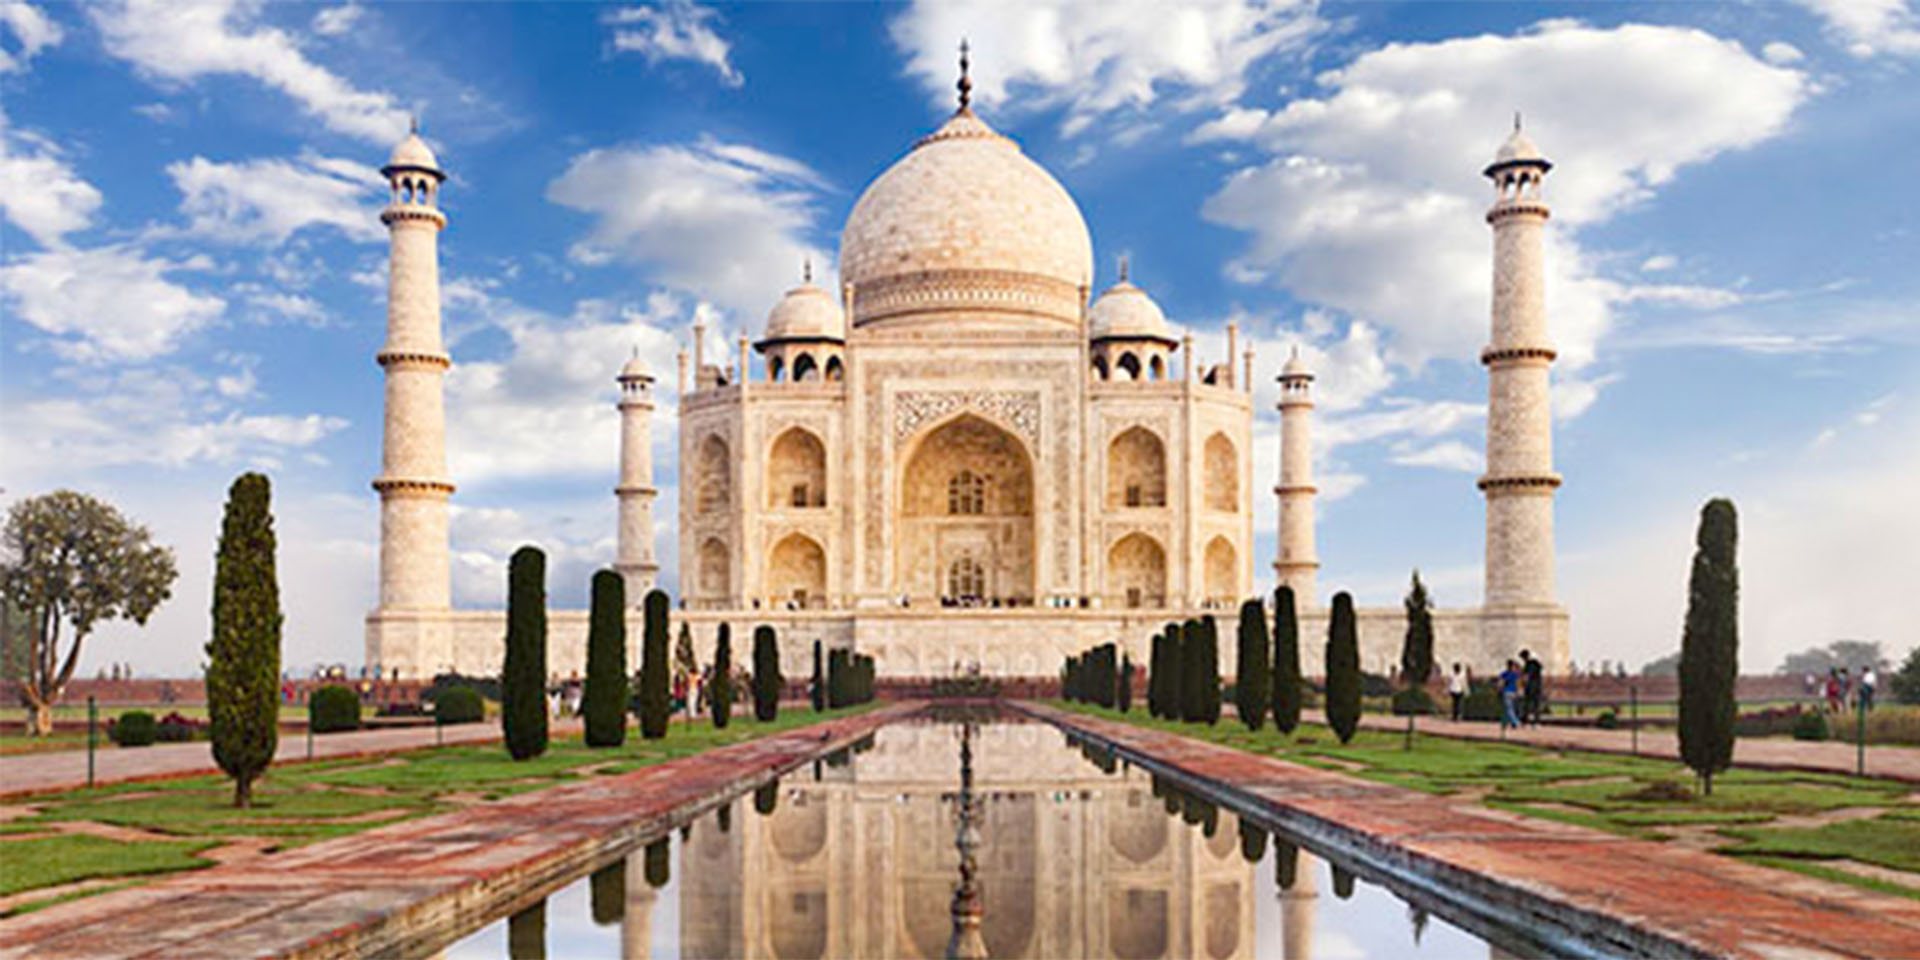 El Taj Mahal es una de las Siete Maravillas del mundo